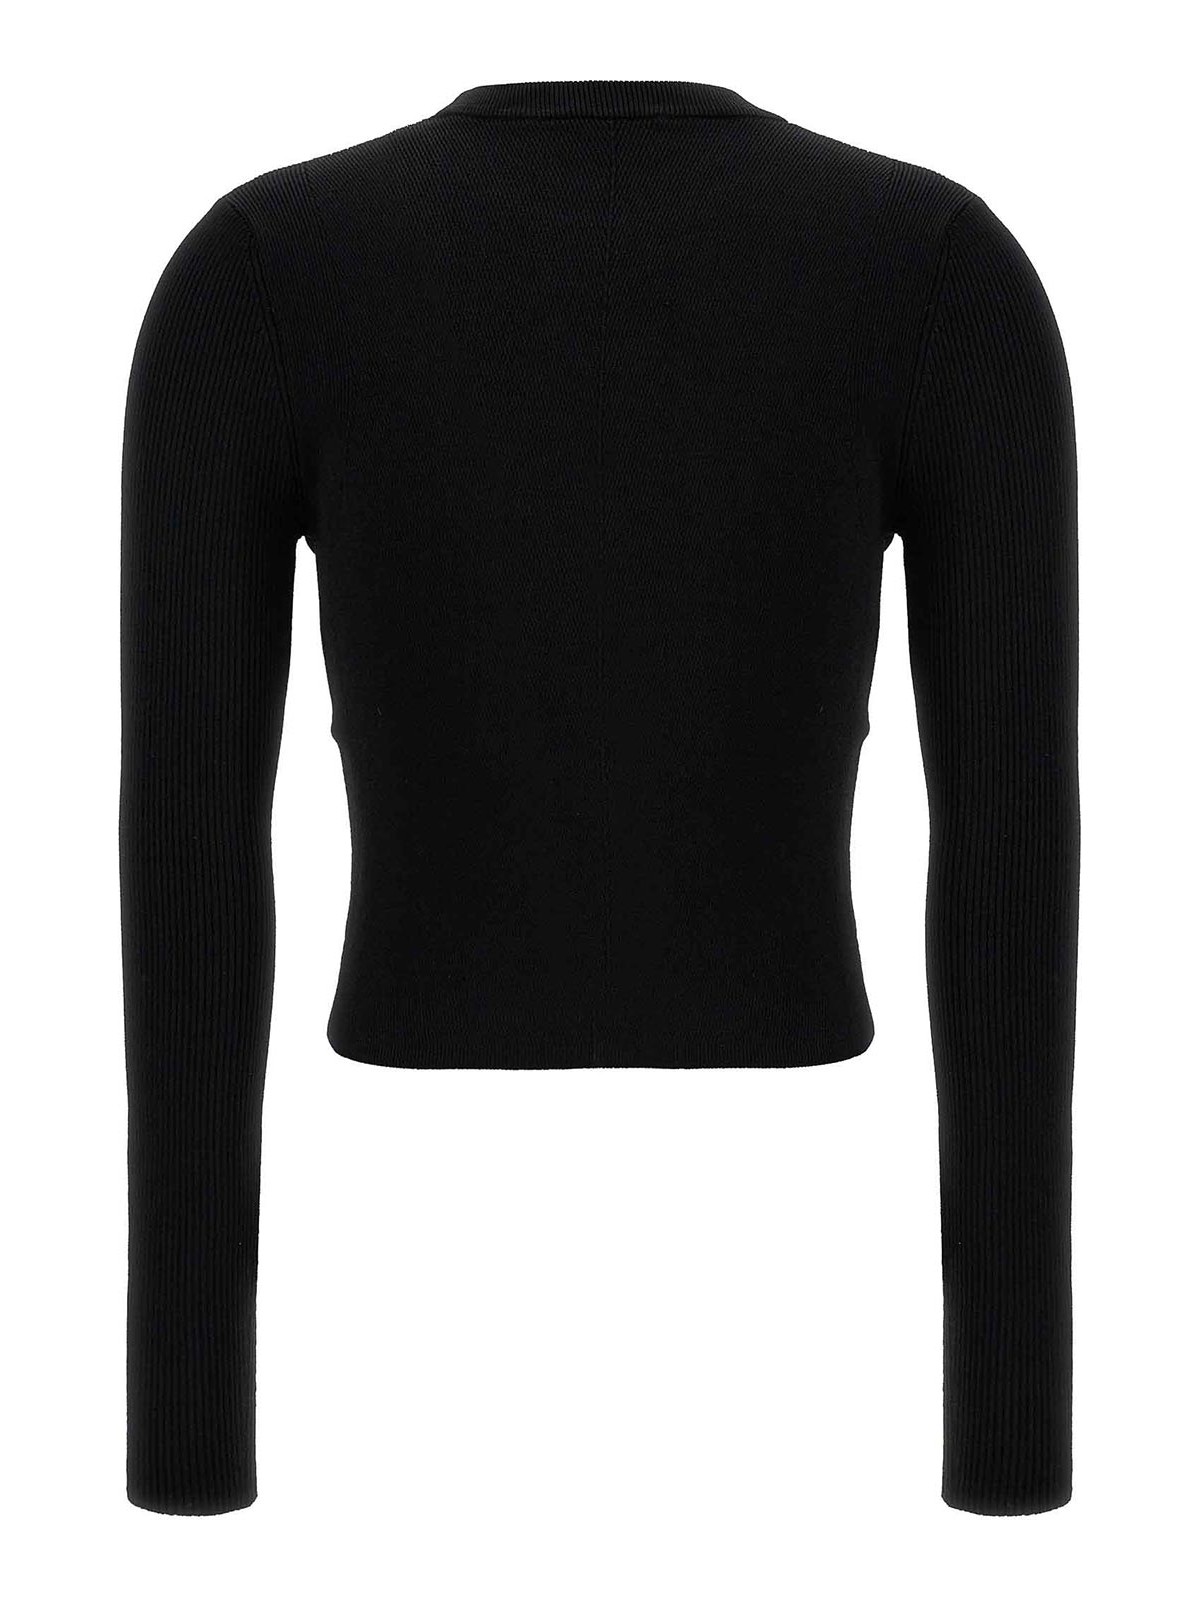 Shop Diesel Suéter Cuello Redondo - Negro In Black